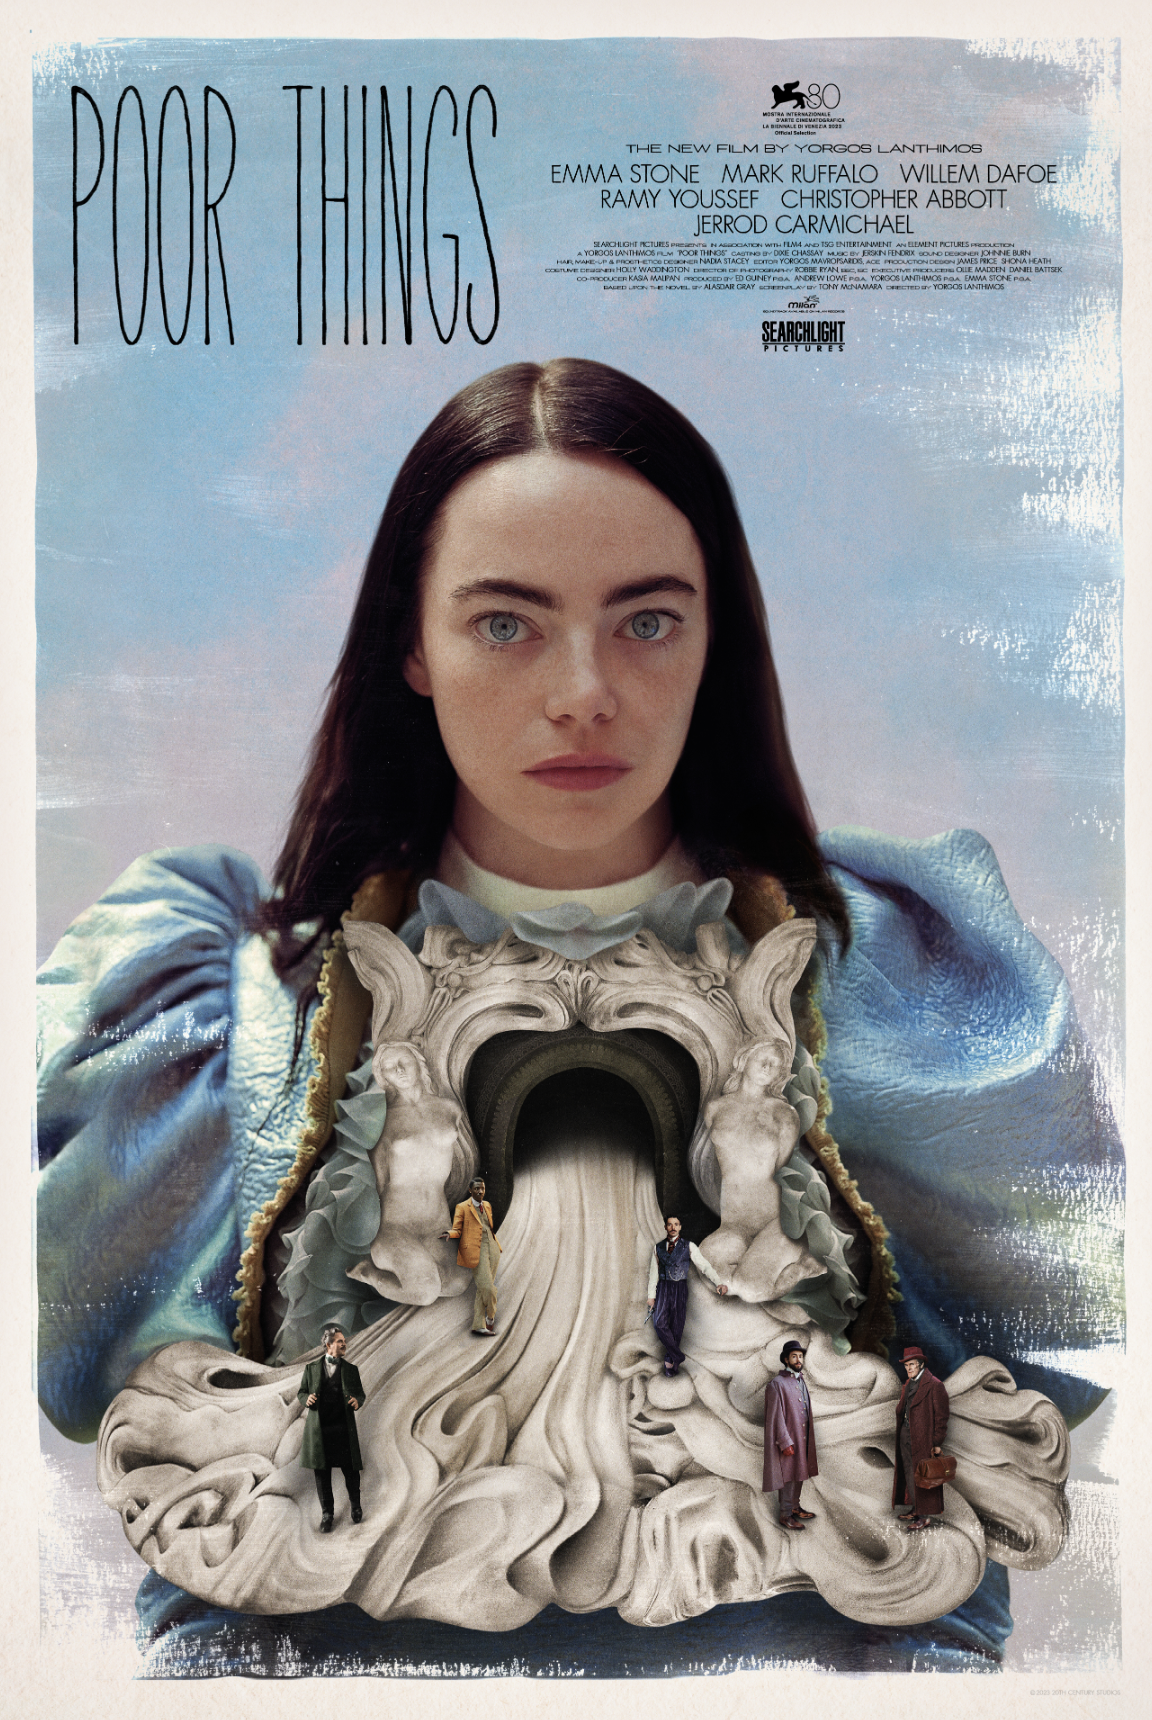 Kinoplakat for Poor Things